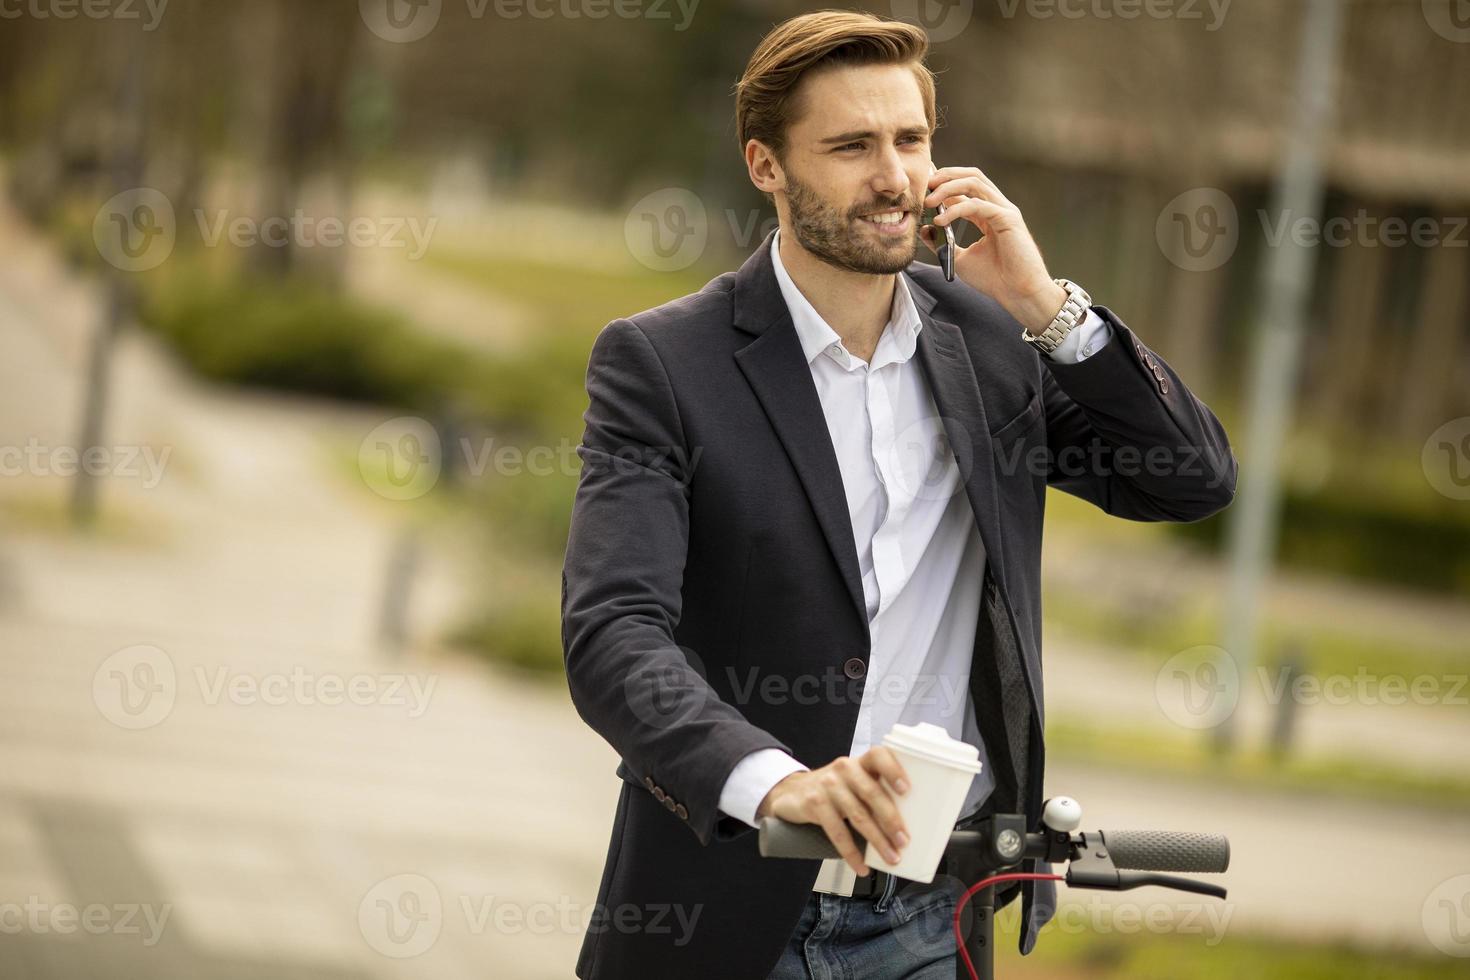 jonge zakenman met behulp van mobiele telefoon op elektrische scooter foto